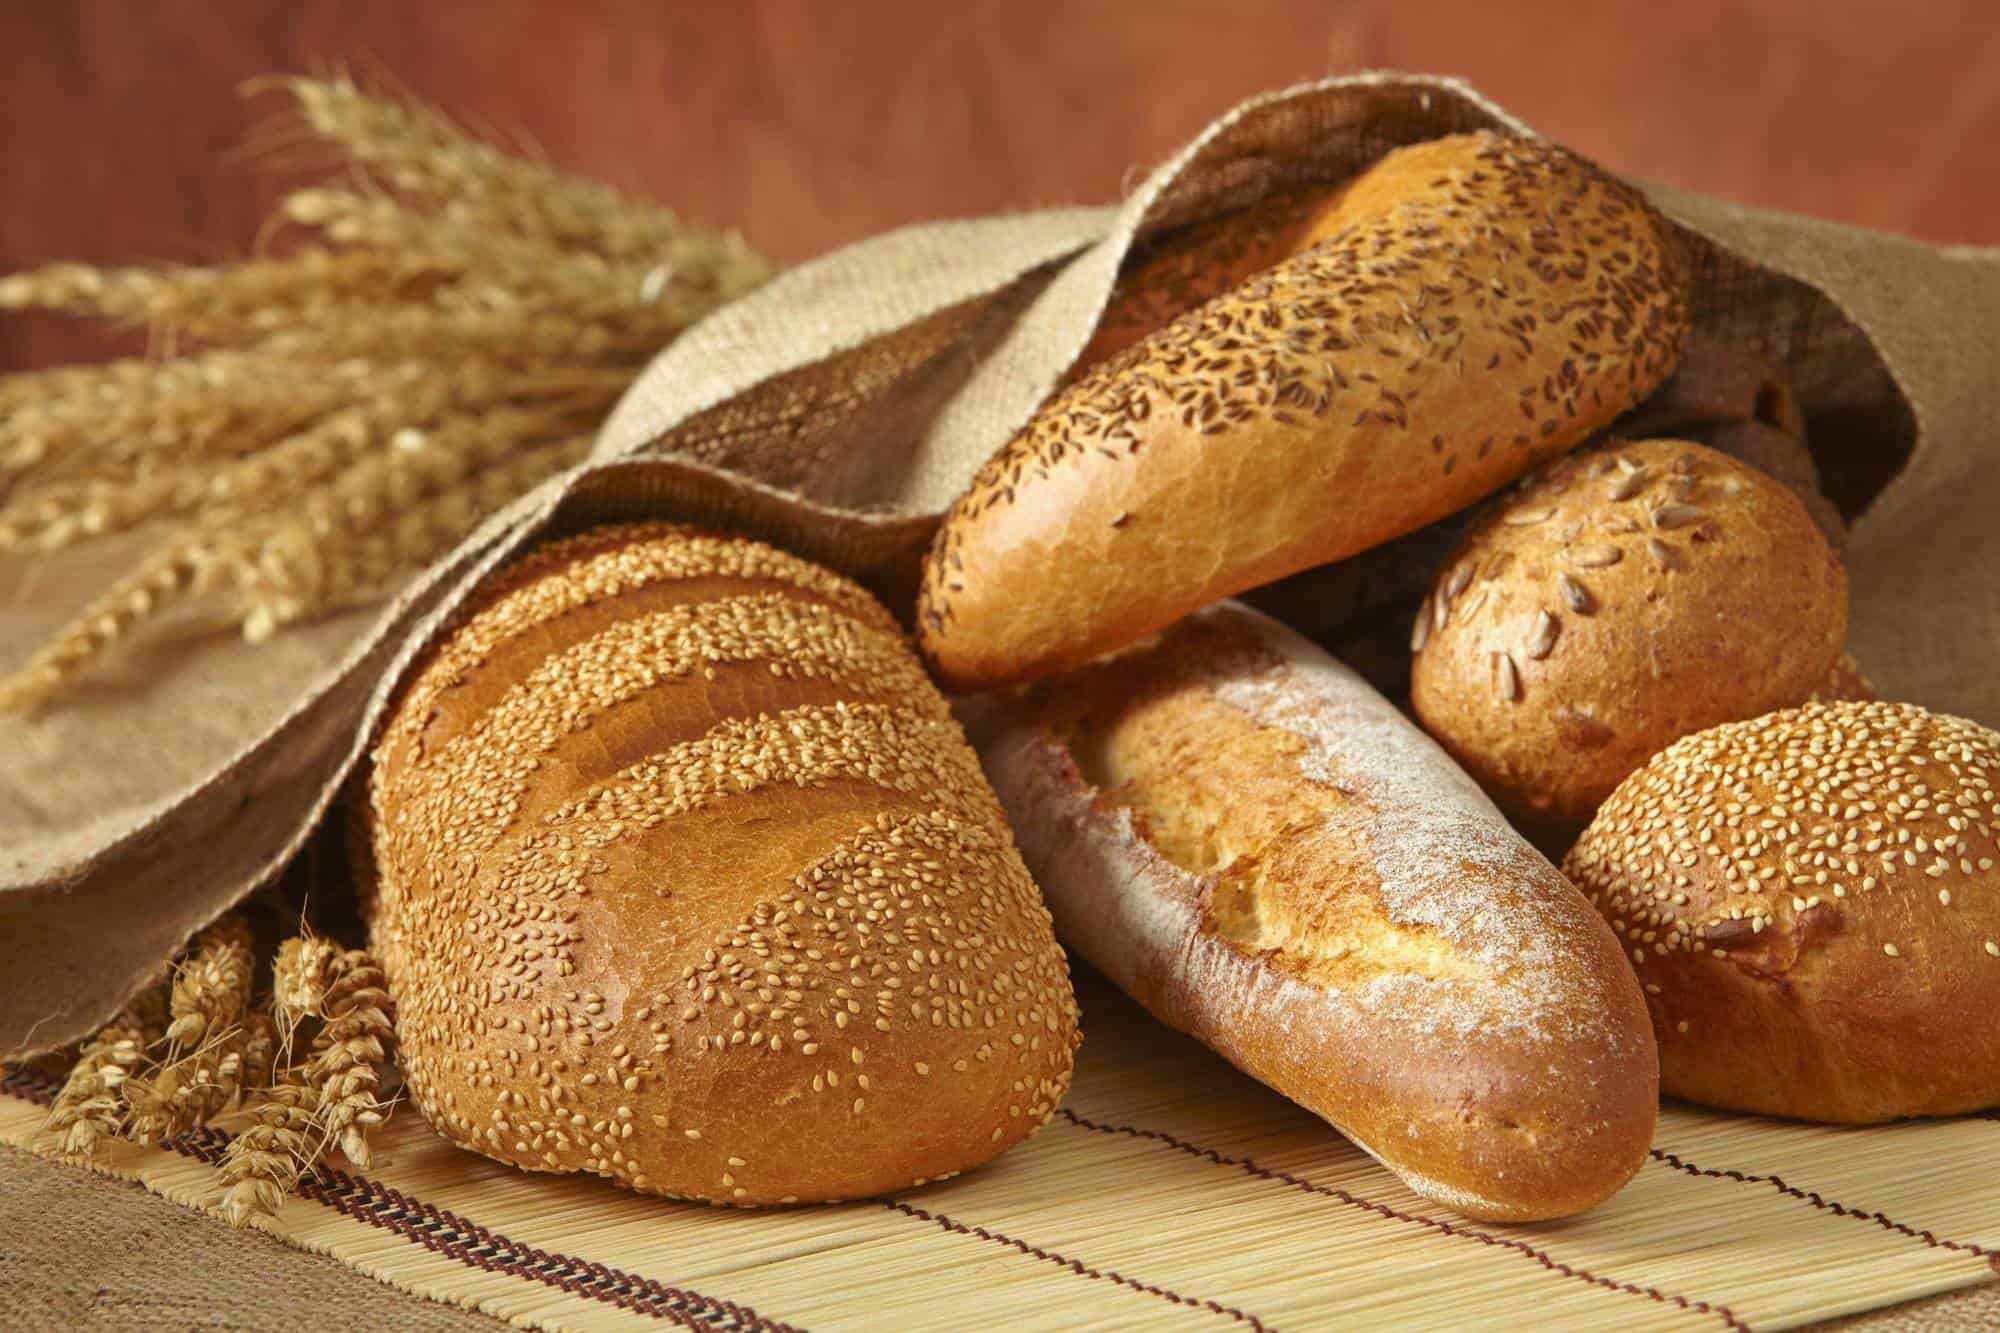 تفسير حلم رؤية الخبز في المنام